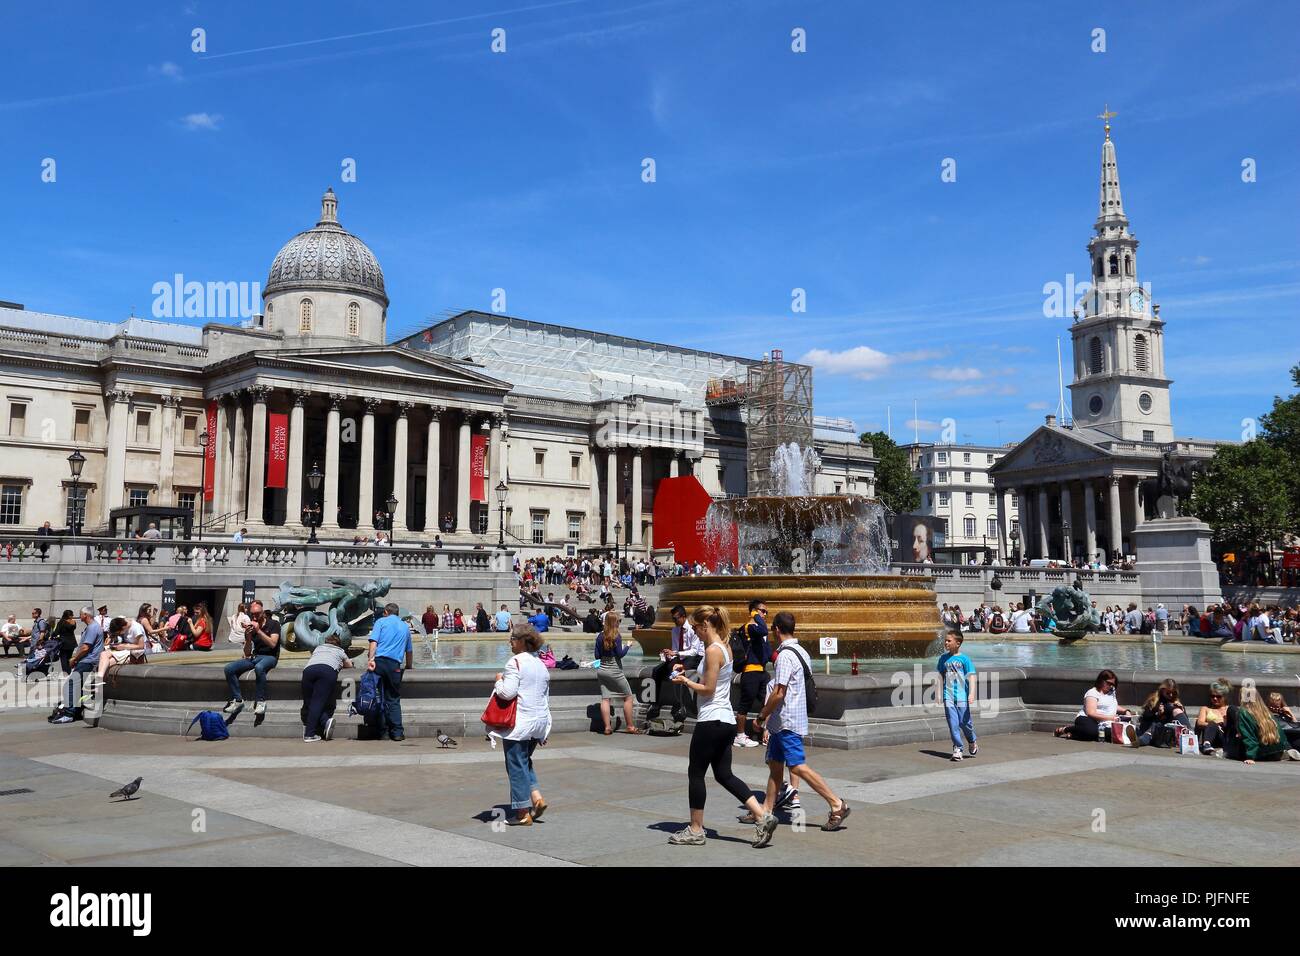 LONDON, Großbritannien - 6. JULI 2016: die Menschen besuchen Trafalgar Square in London. Der Platz ist ein Teil der Stadt von Westminster und wurde in 1840 gebaut. Stockfoto